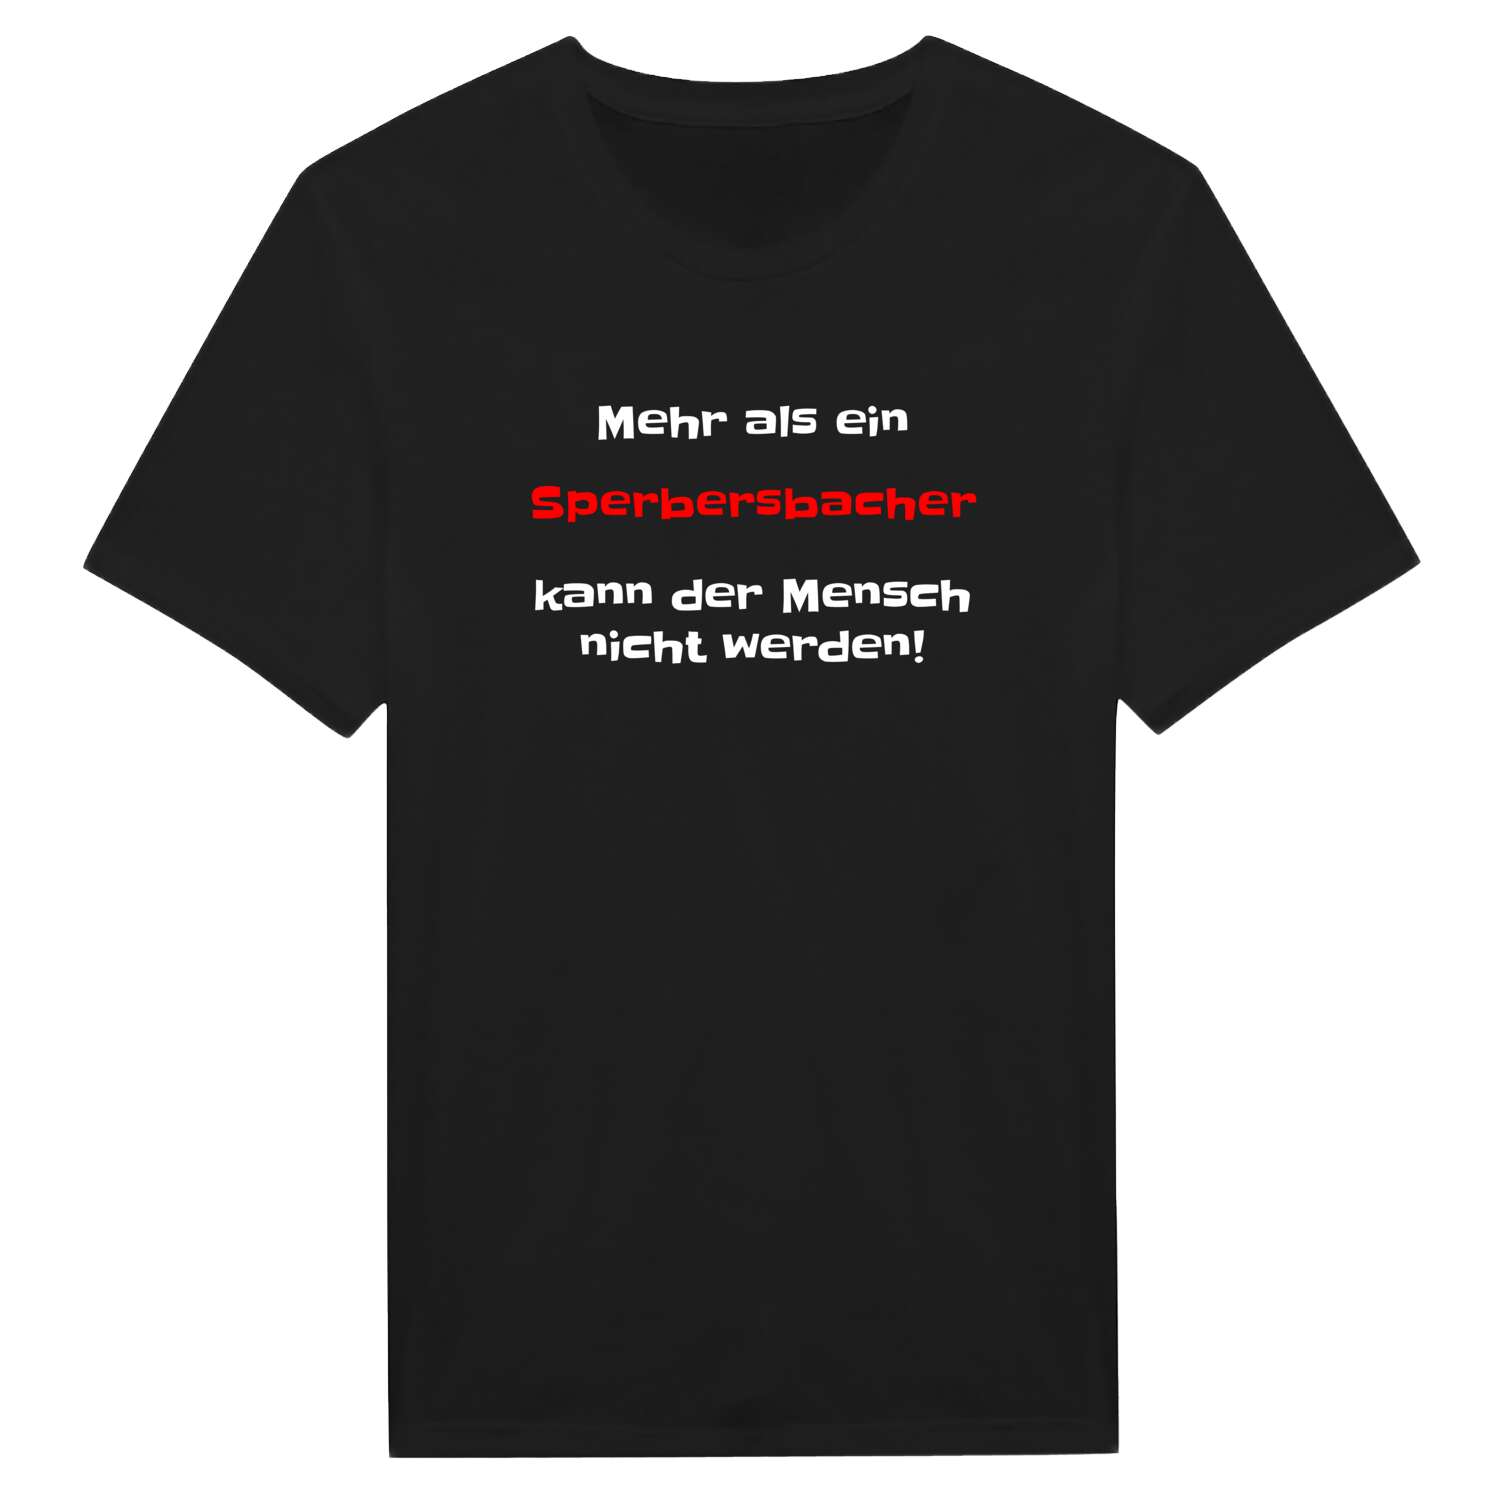 Sperbersbach T-Shirt »Mehr als ein«